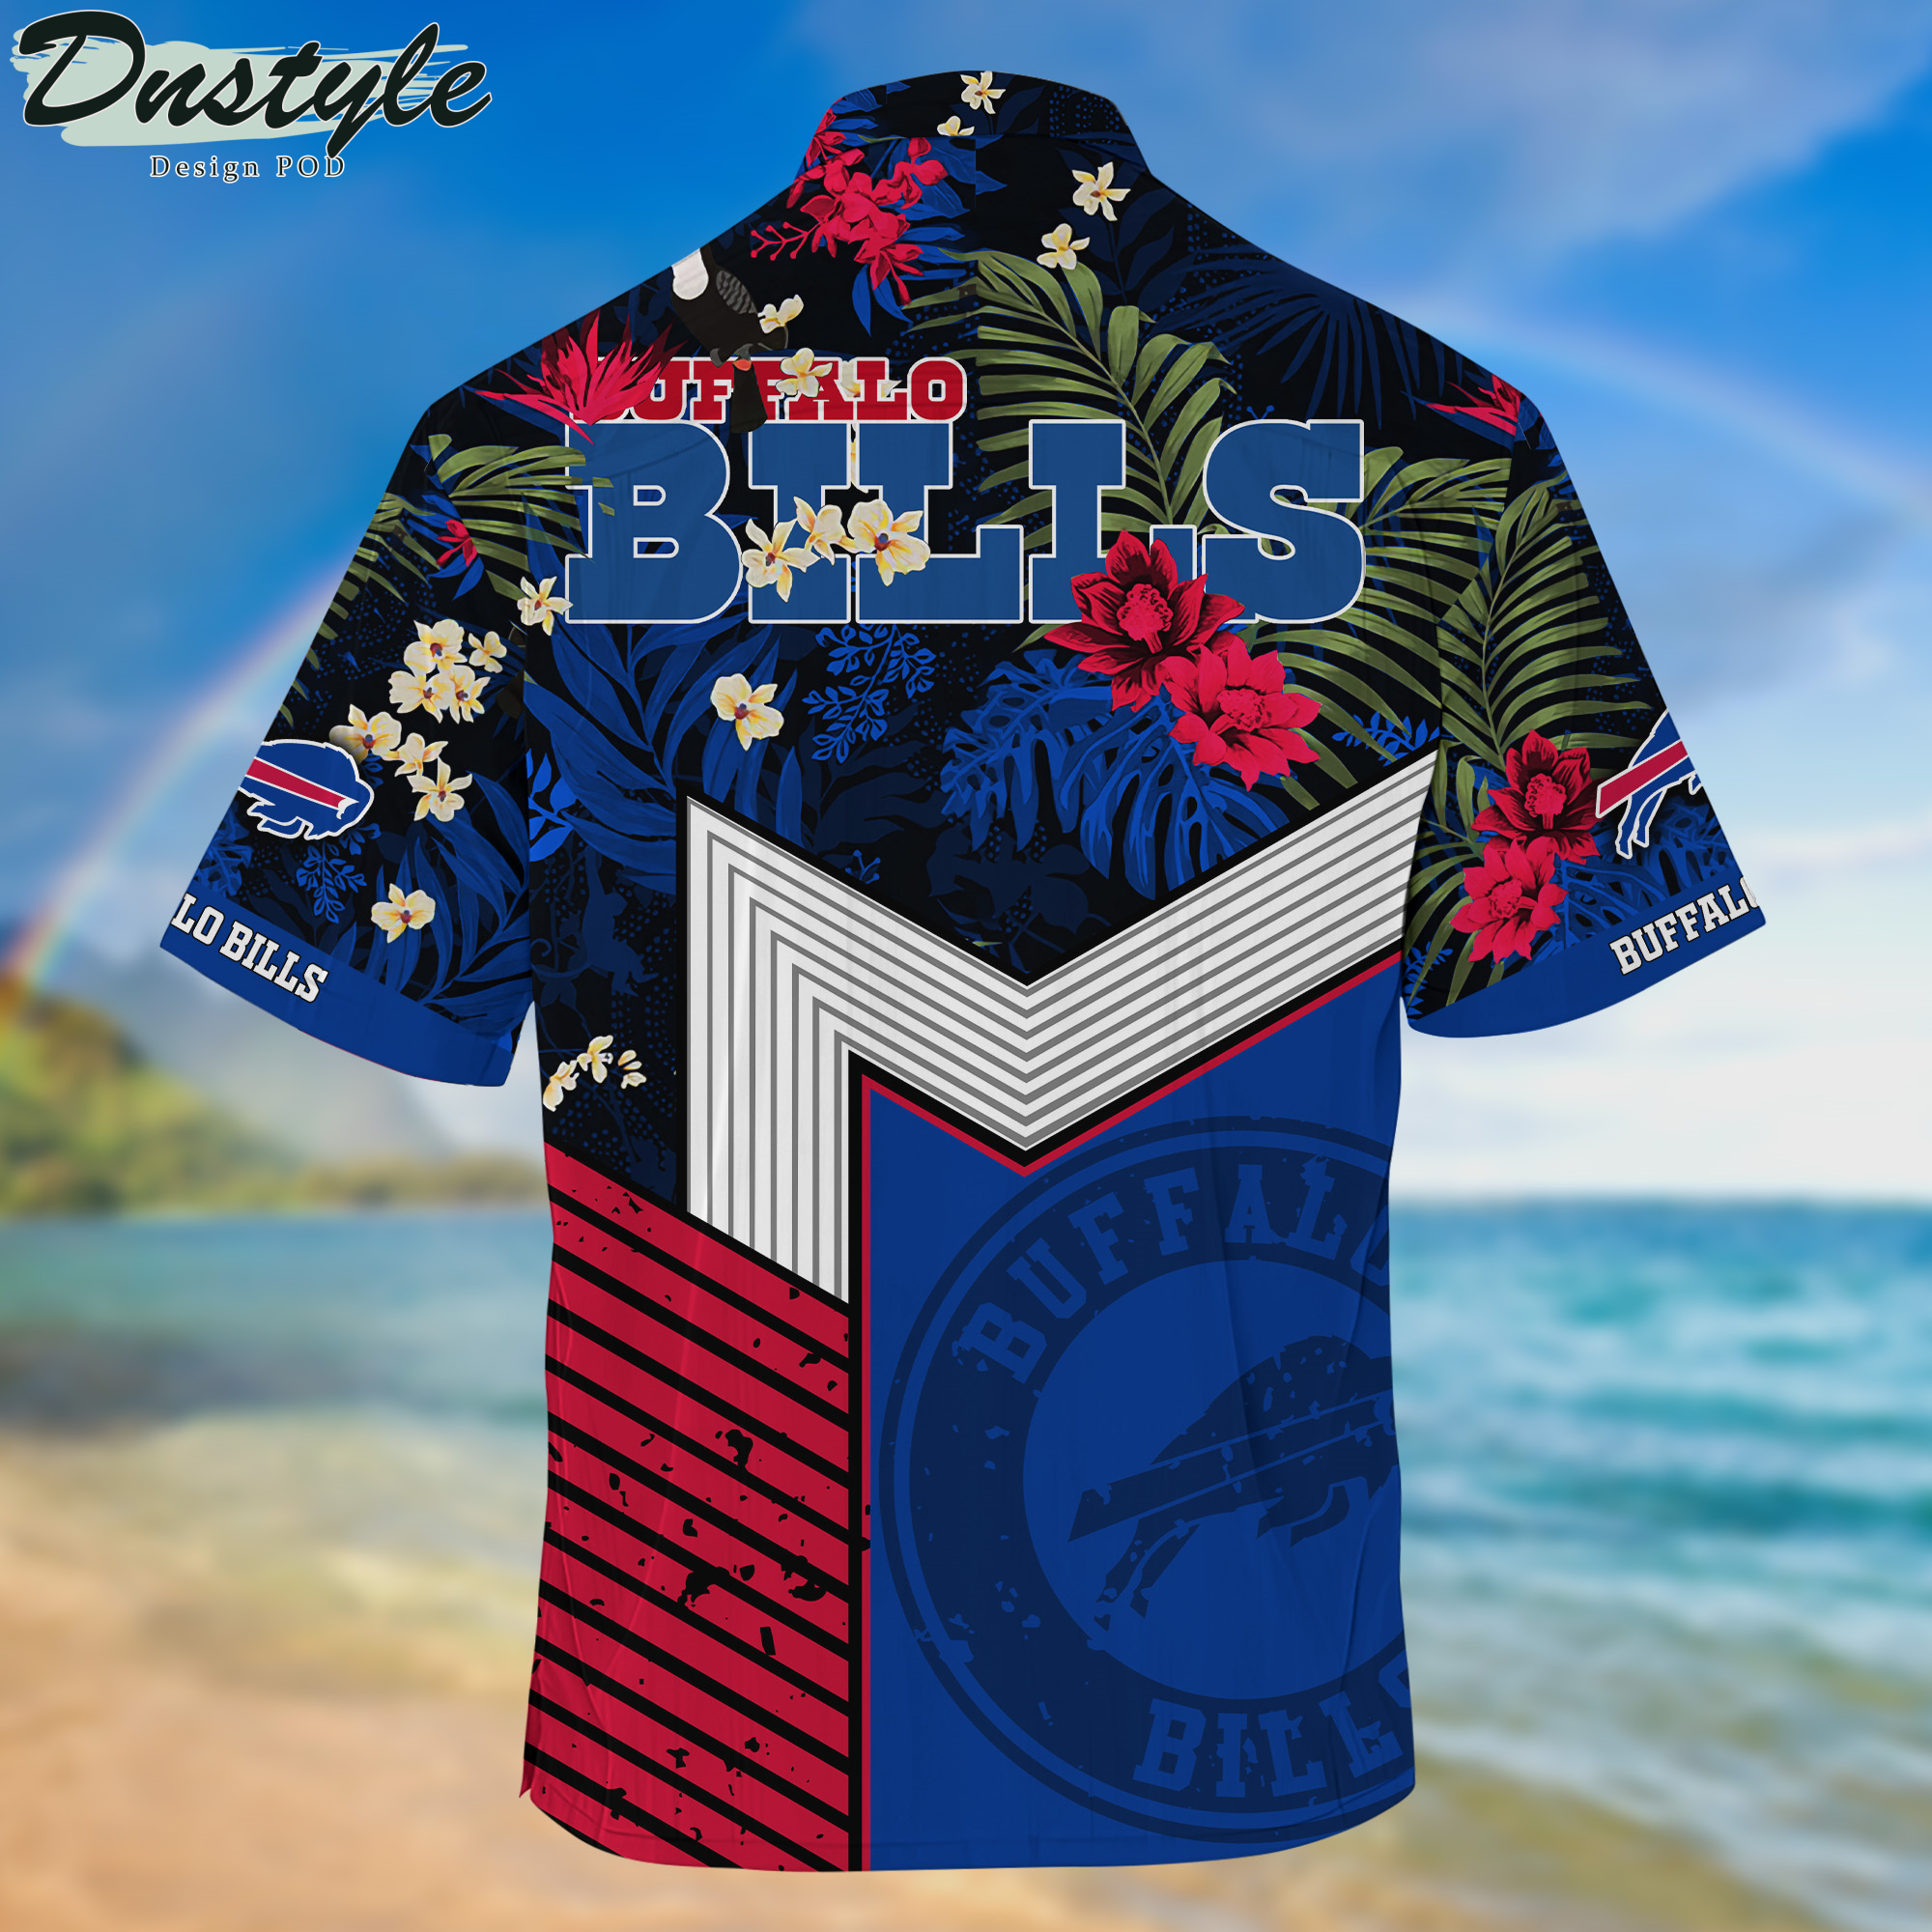 Buffalo Bills Hawaii Shirt And Shorts New Collection